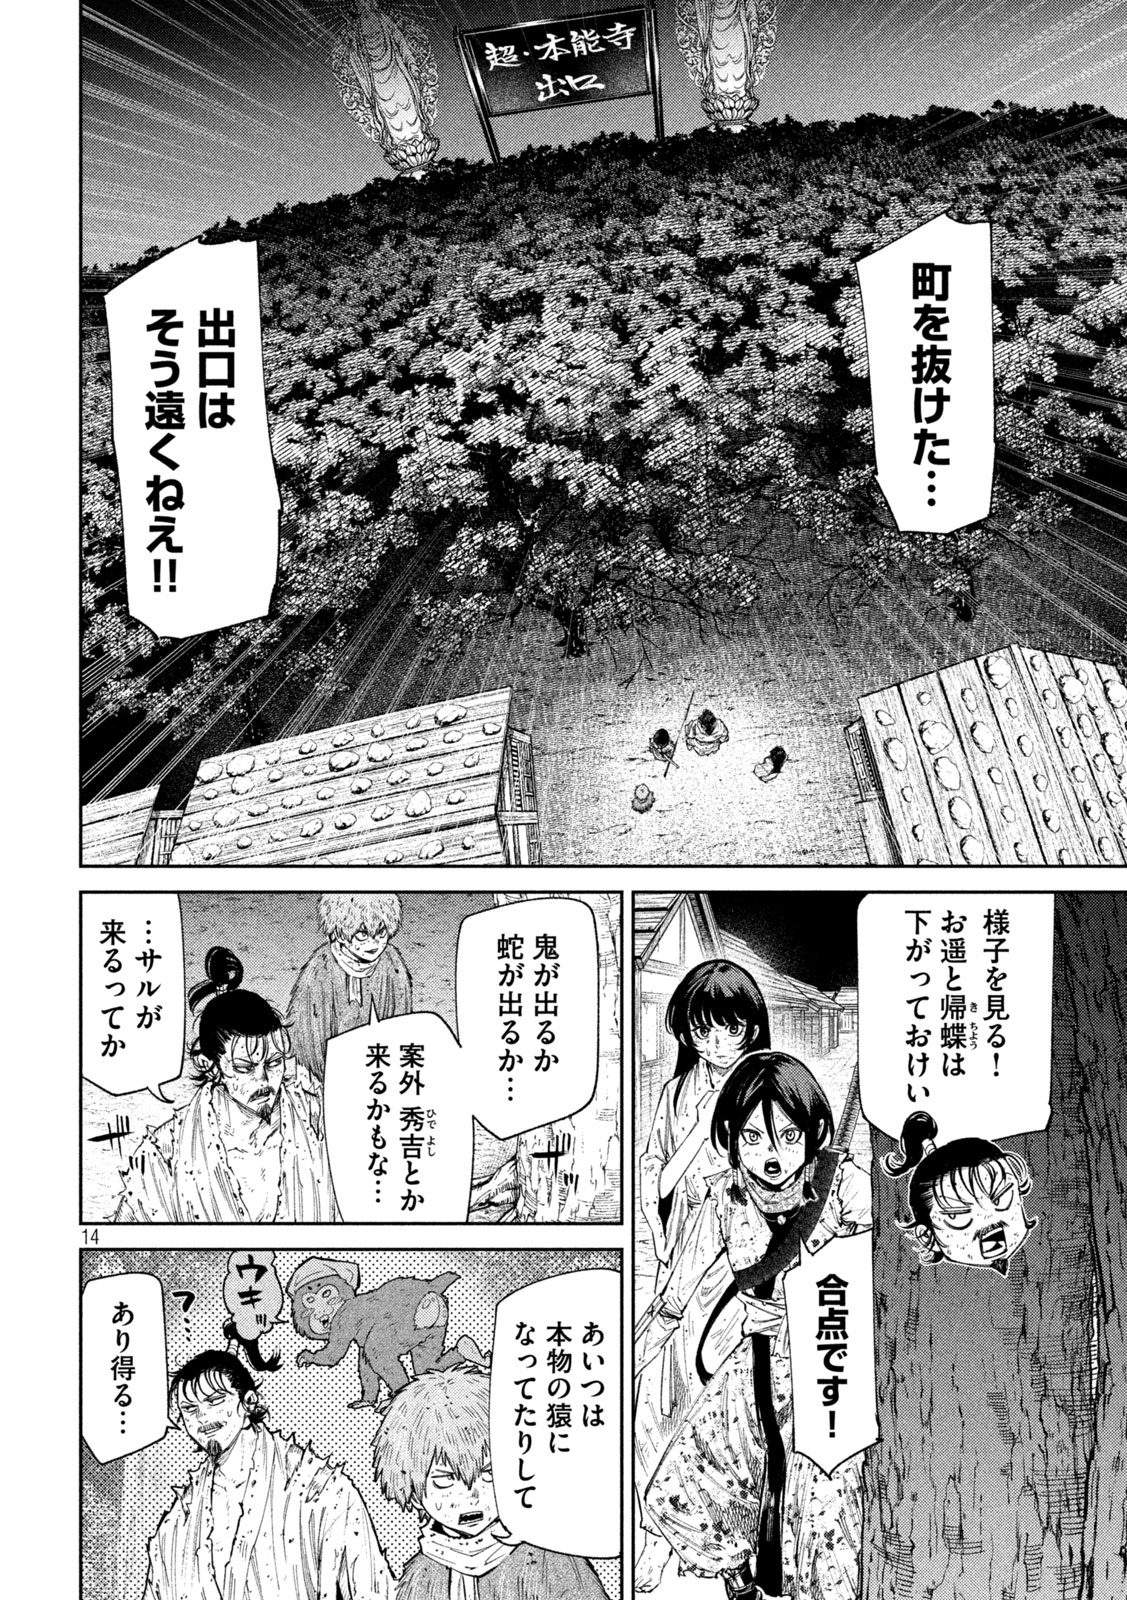 Nando toki o kurikaeshitemo Honnouji ga moerunjaga! - Chapter 130 - Page 14